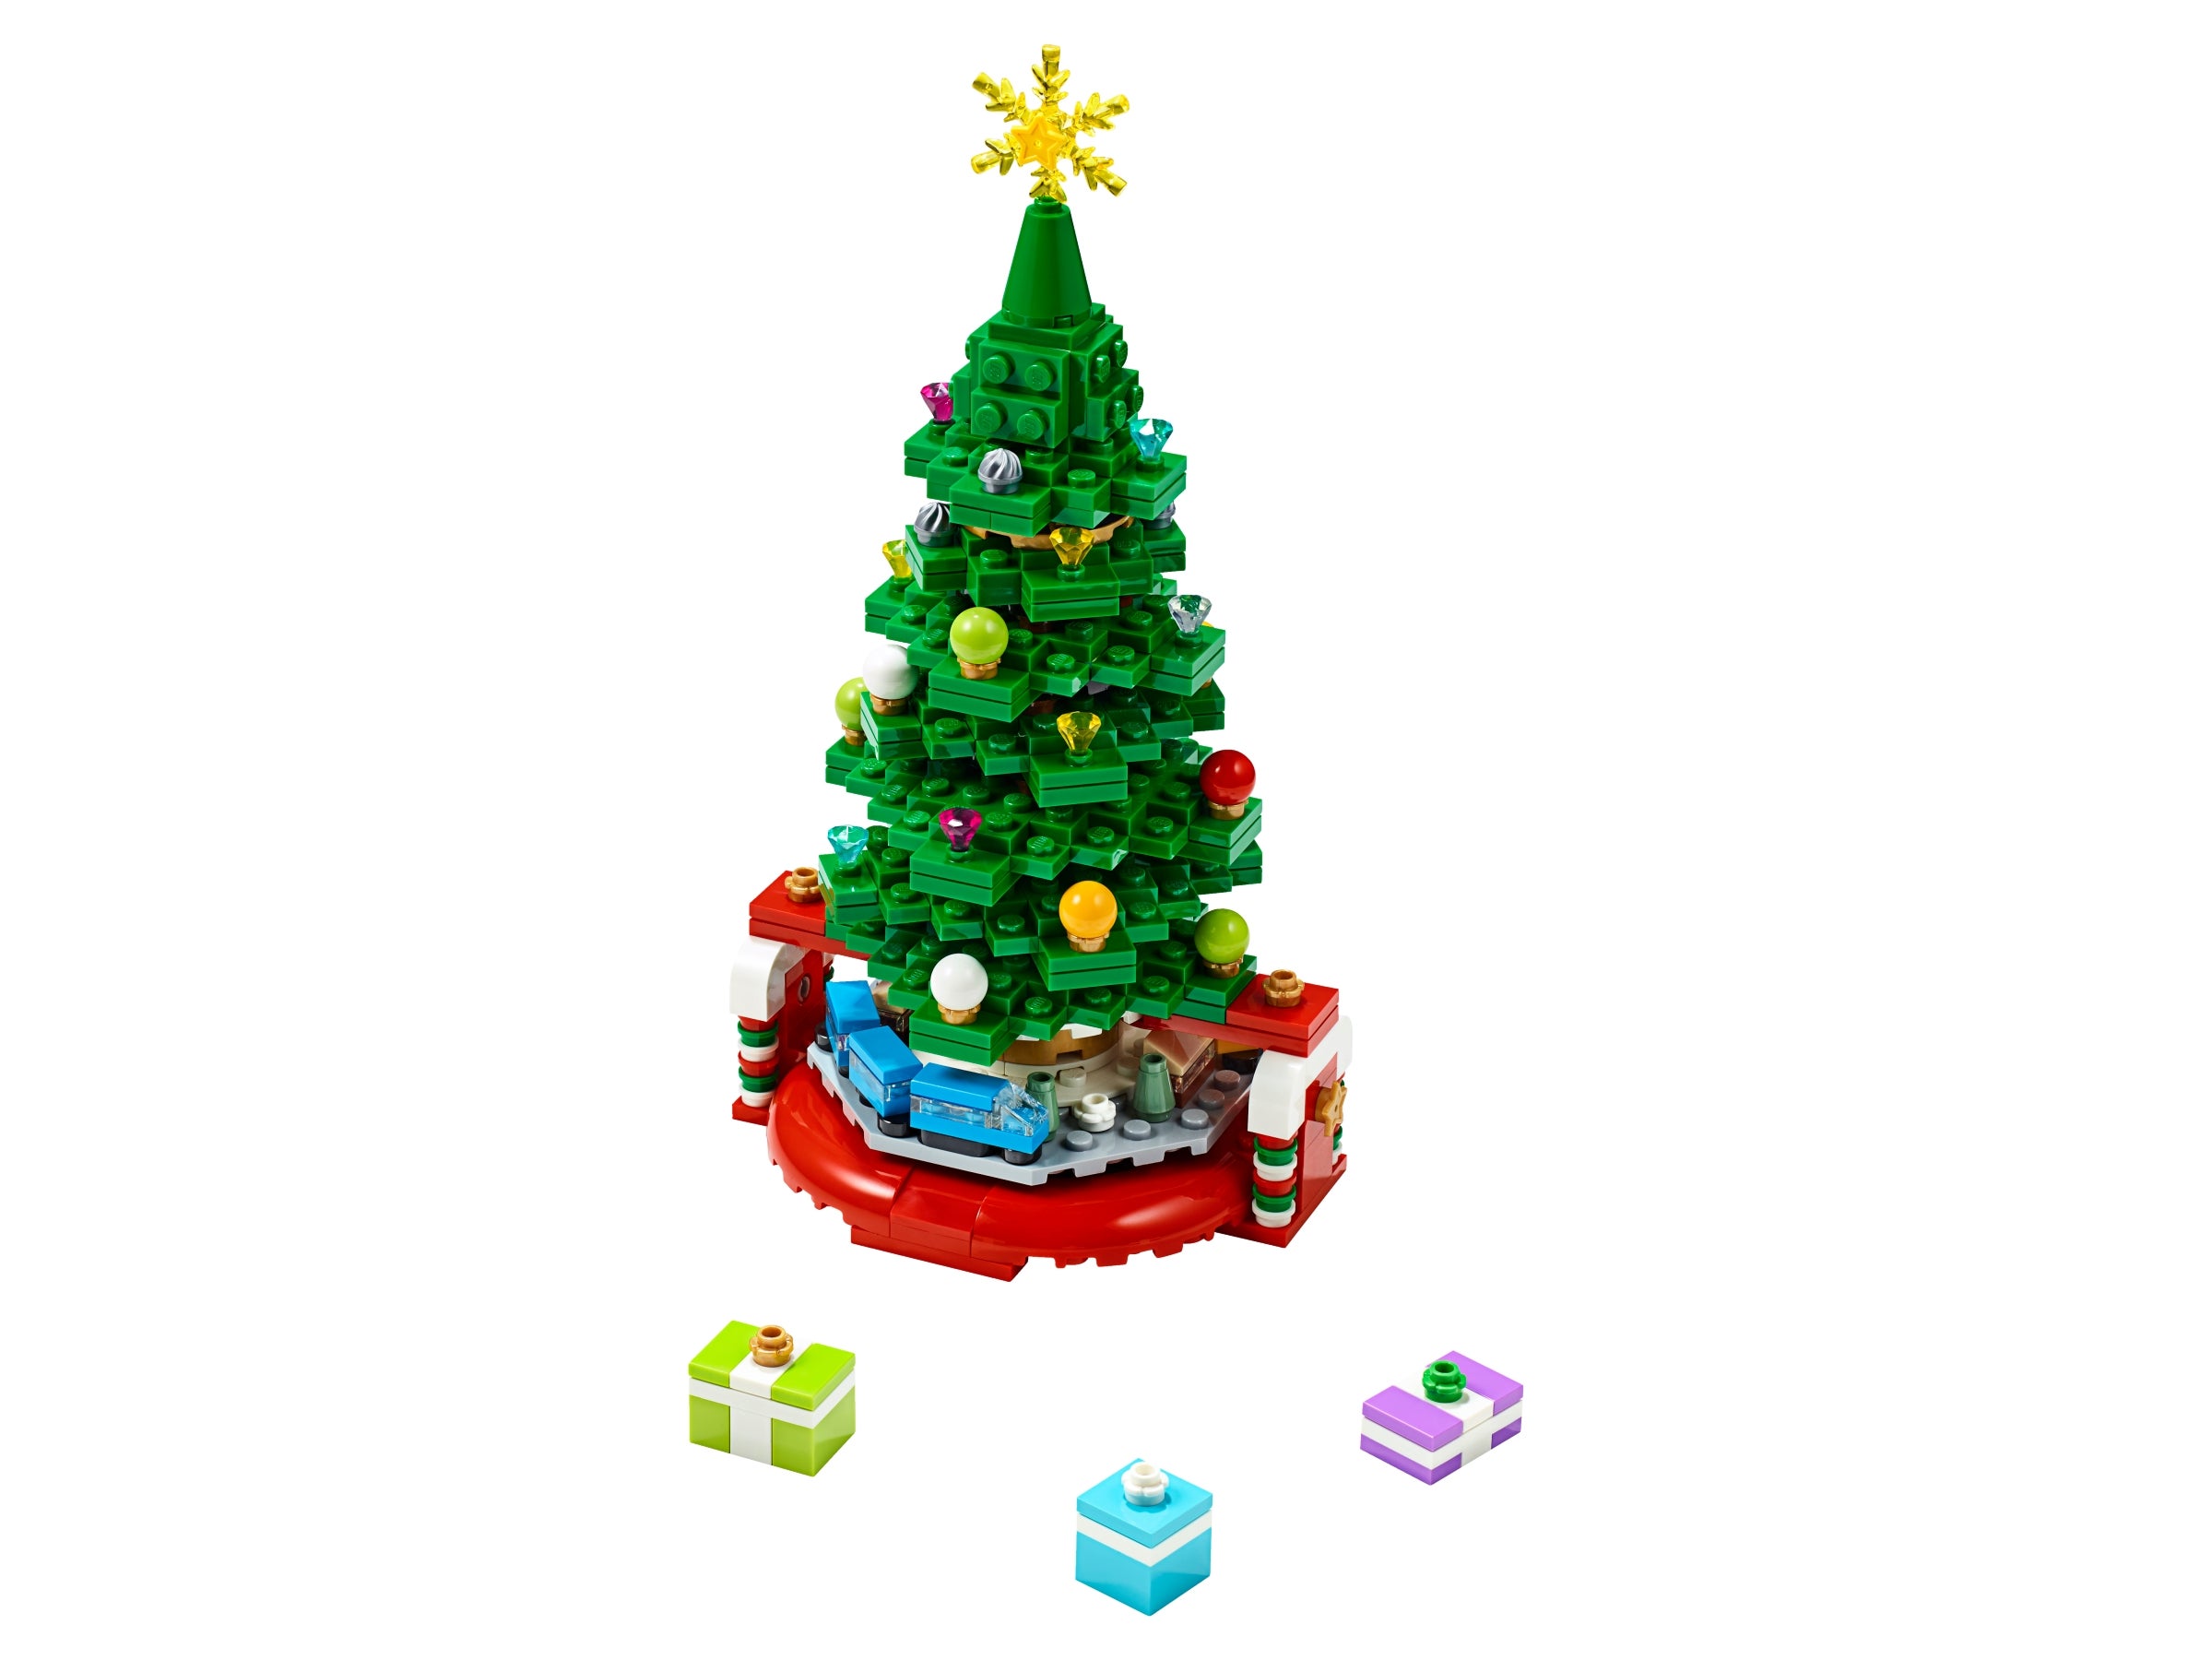 Christmas/Tree/Santa/New/Sealed LEGO 30576 Creator Christmas Tree Polybag